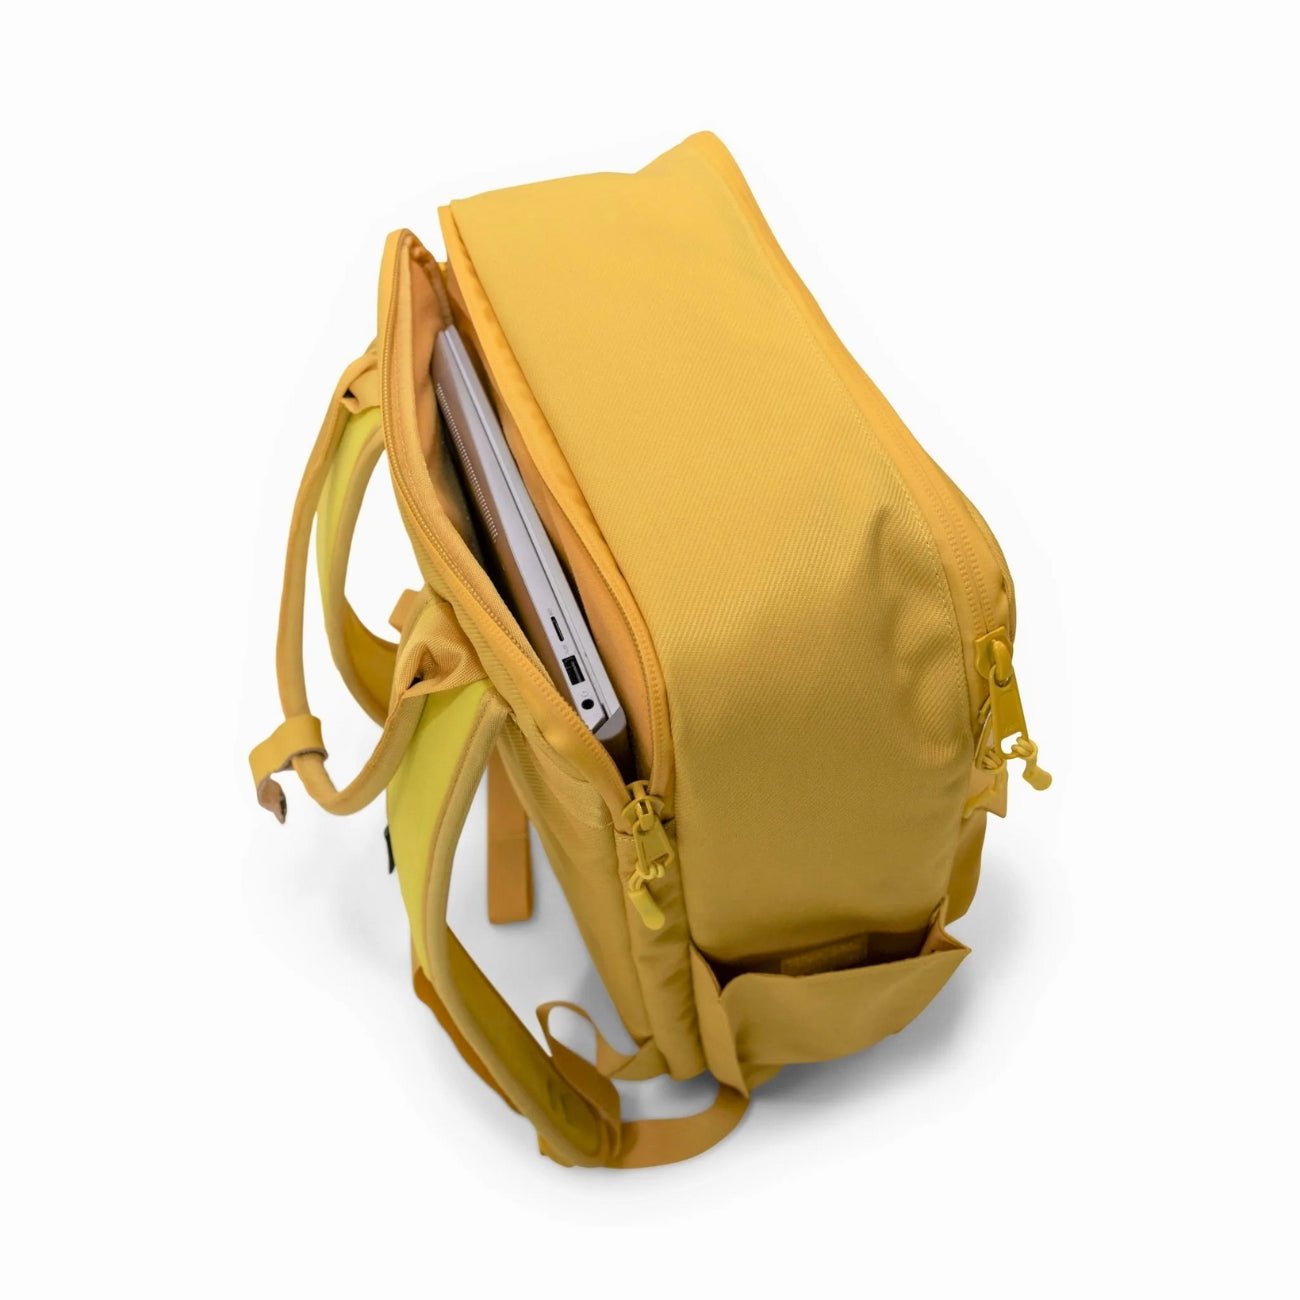 The New Sierra Backpack - Aspen Gold